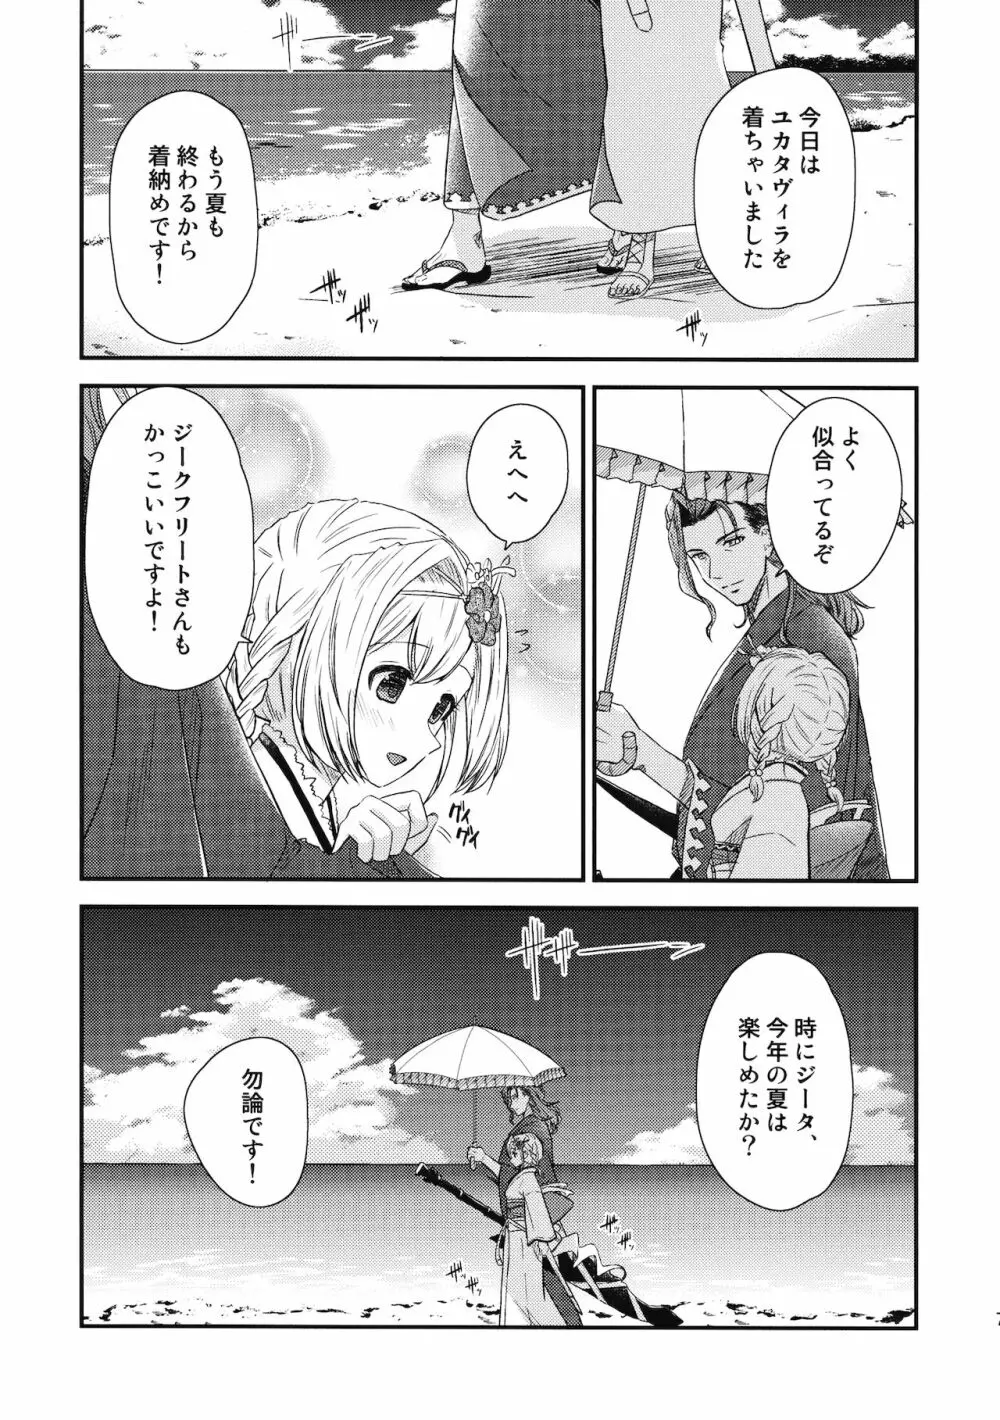 ぜんぶ夏のせい - page6